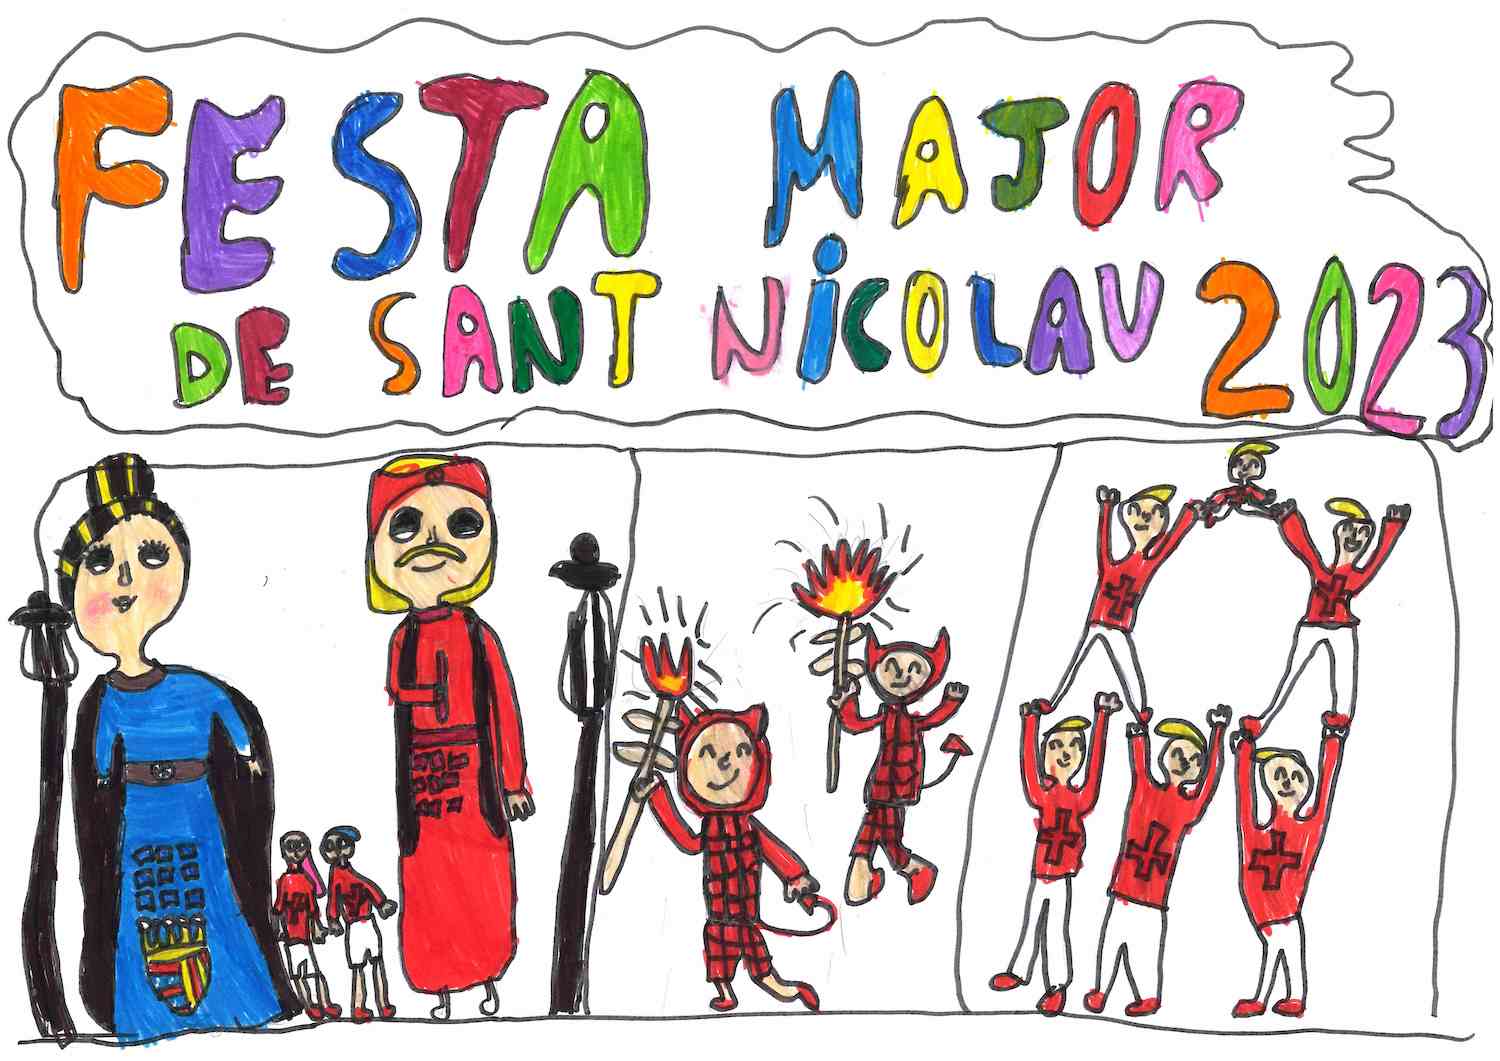 Nora Vázquez del Chanel, guanyadora del concurs de dibuix de la festa major de Sant Nicolau